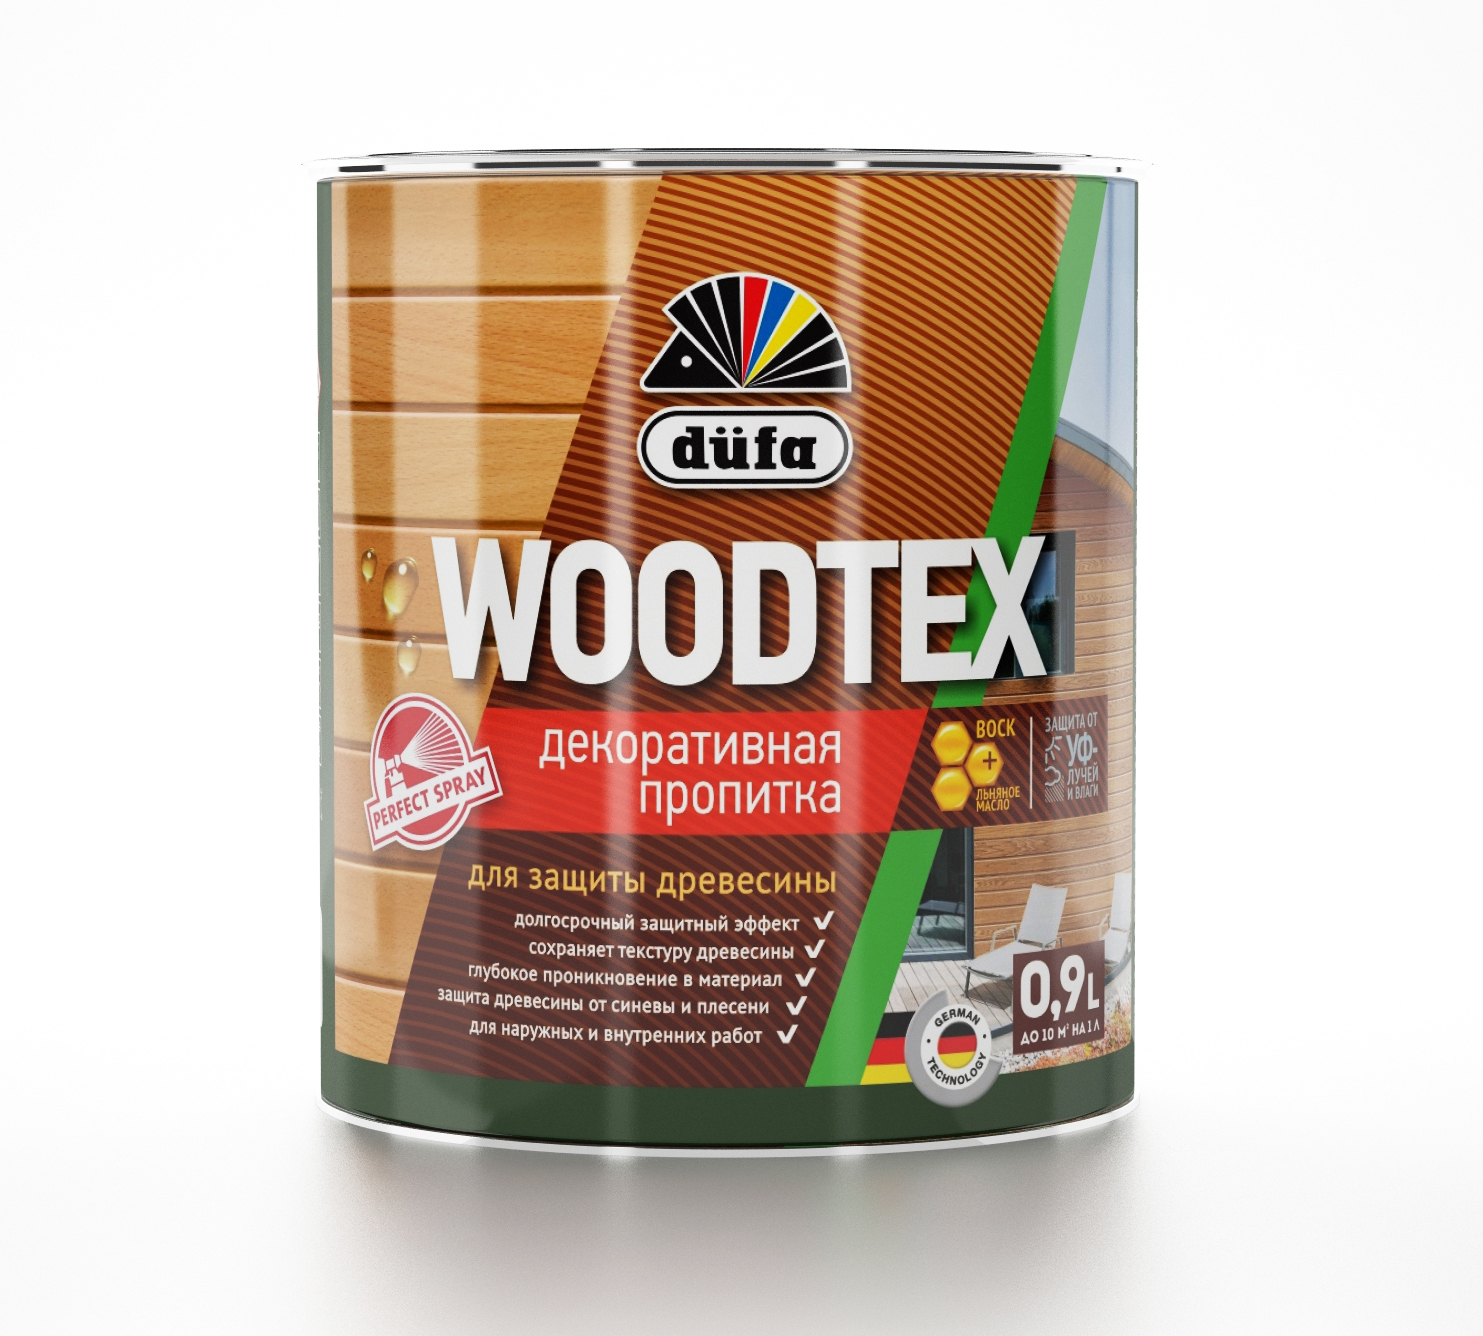 фото Пропитка для дерева dufa wood tex бесцветная, 900 мл